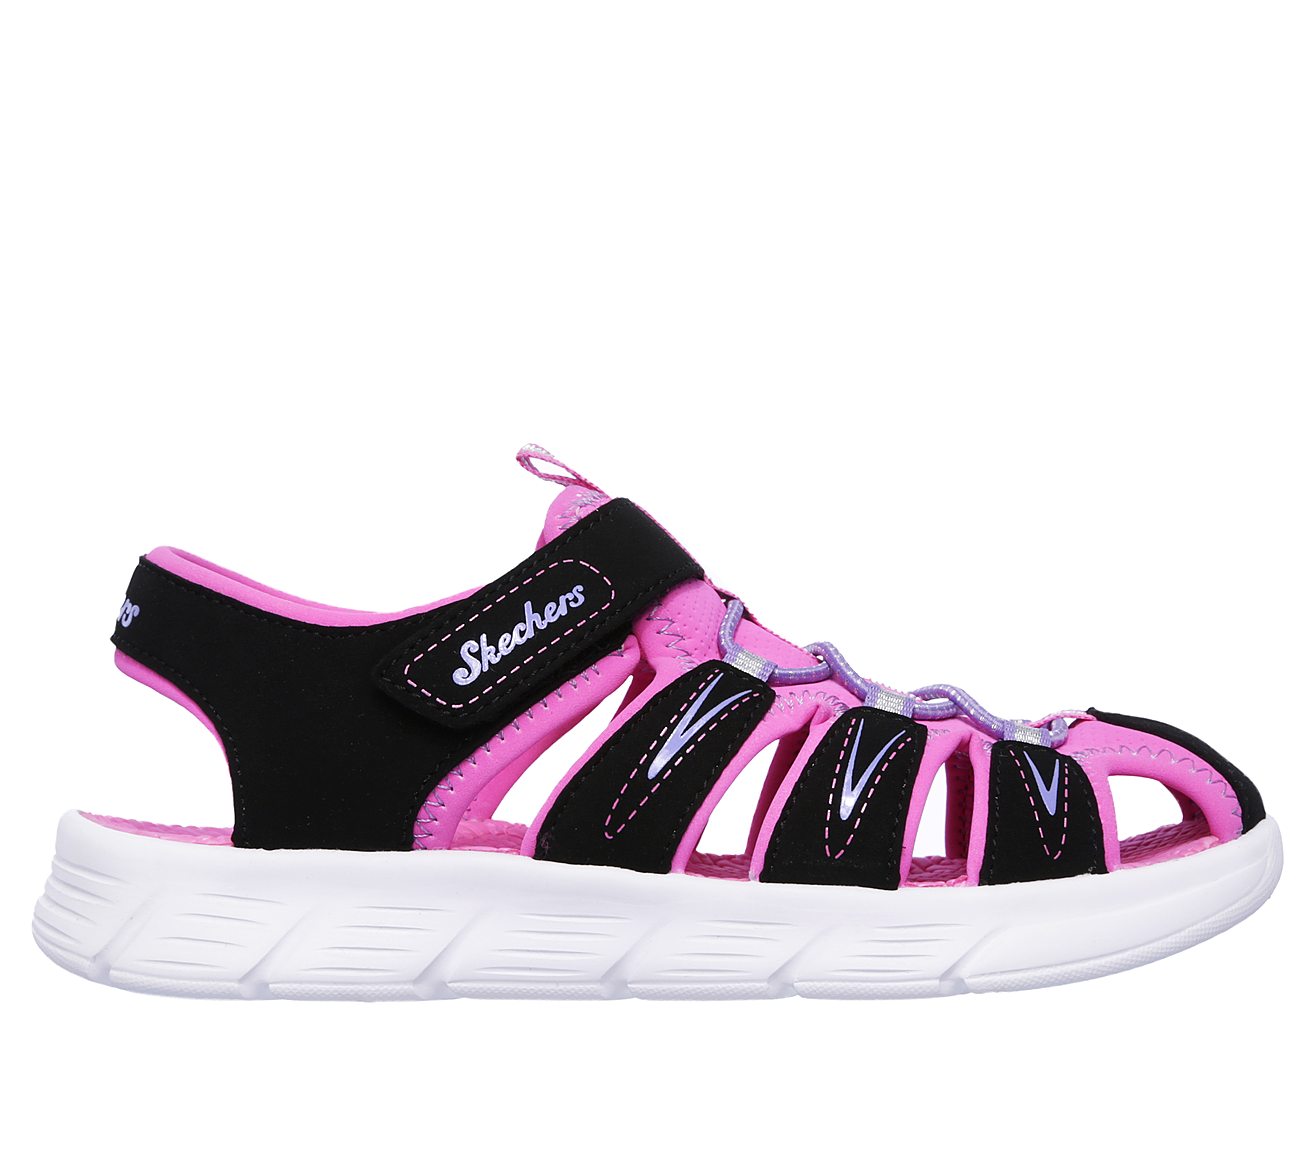 skechers sandals 2014